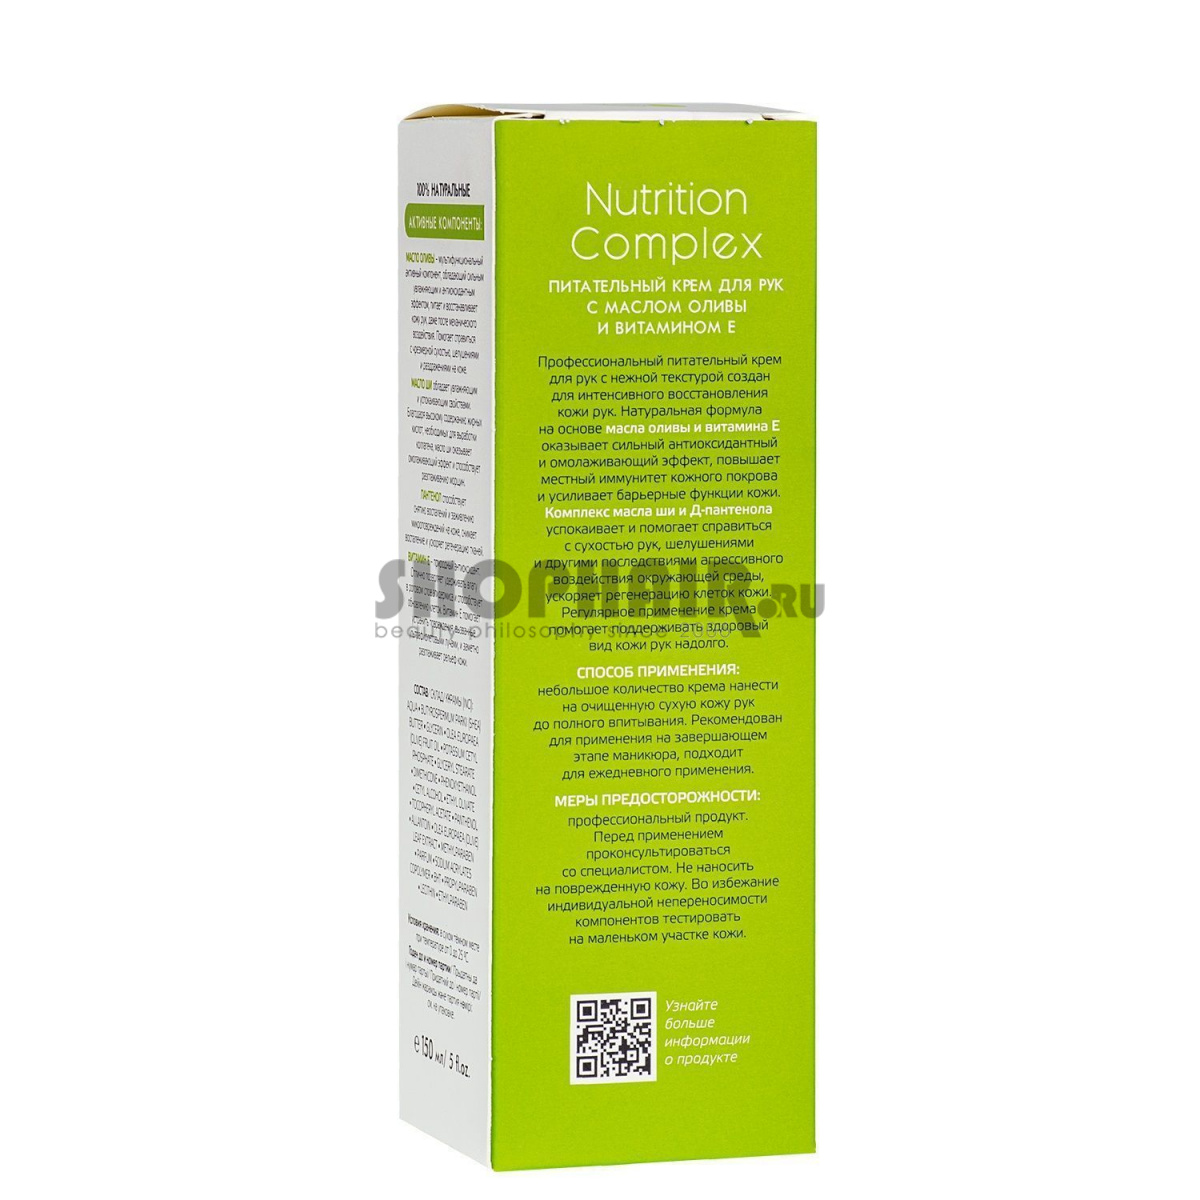 Aravia Nutrition Complex Cream - Крем для рук питательный с маслом оливы и витамином Е 150 мл Aravia Professional (Россия) купить по цене 690 руб.